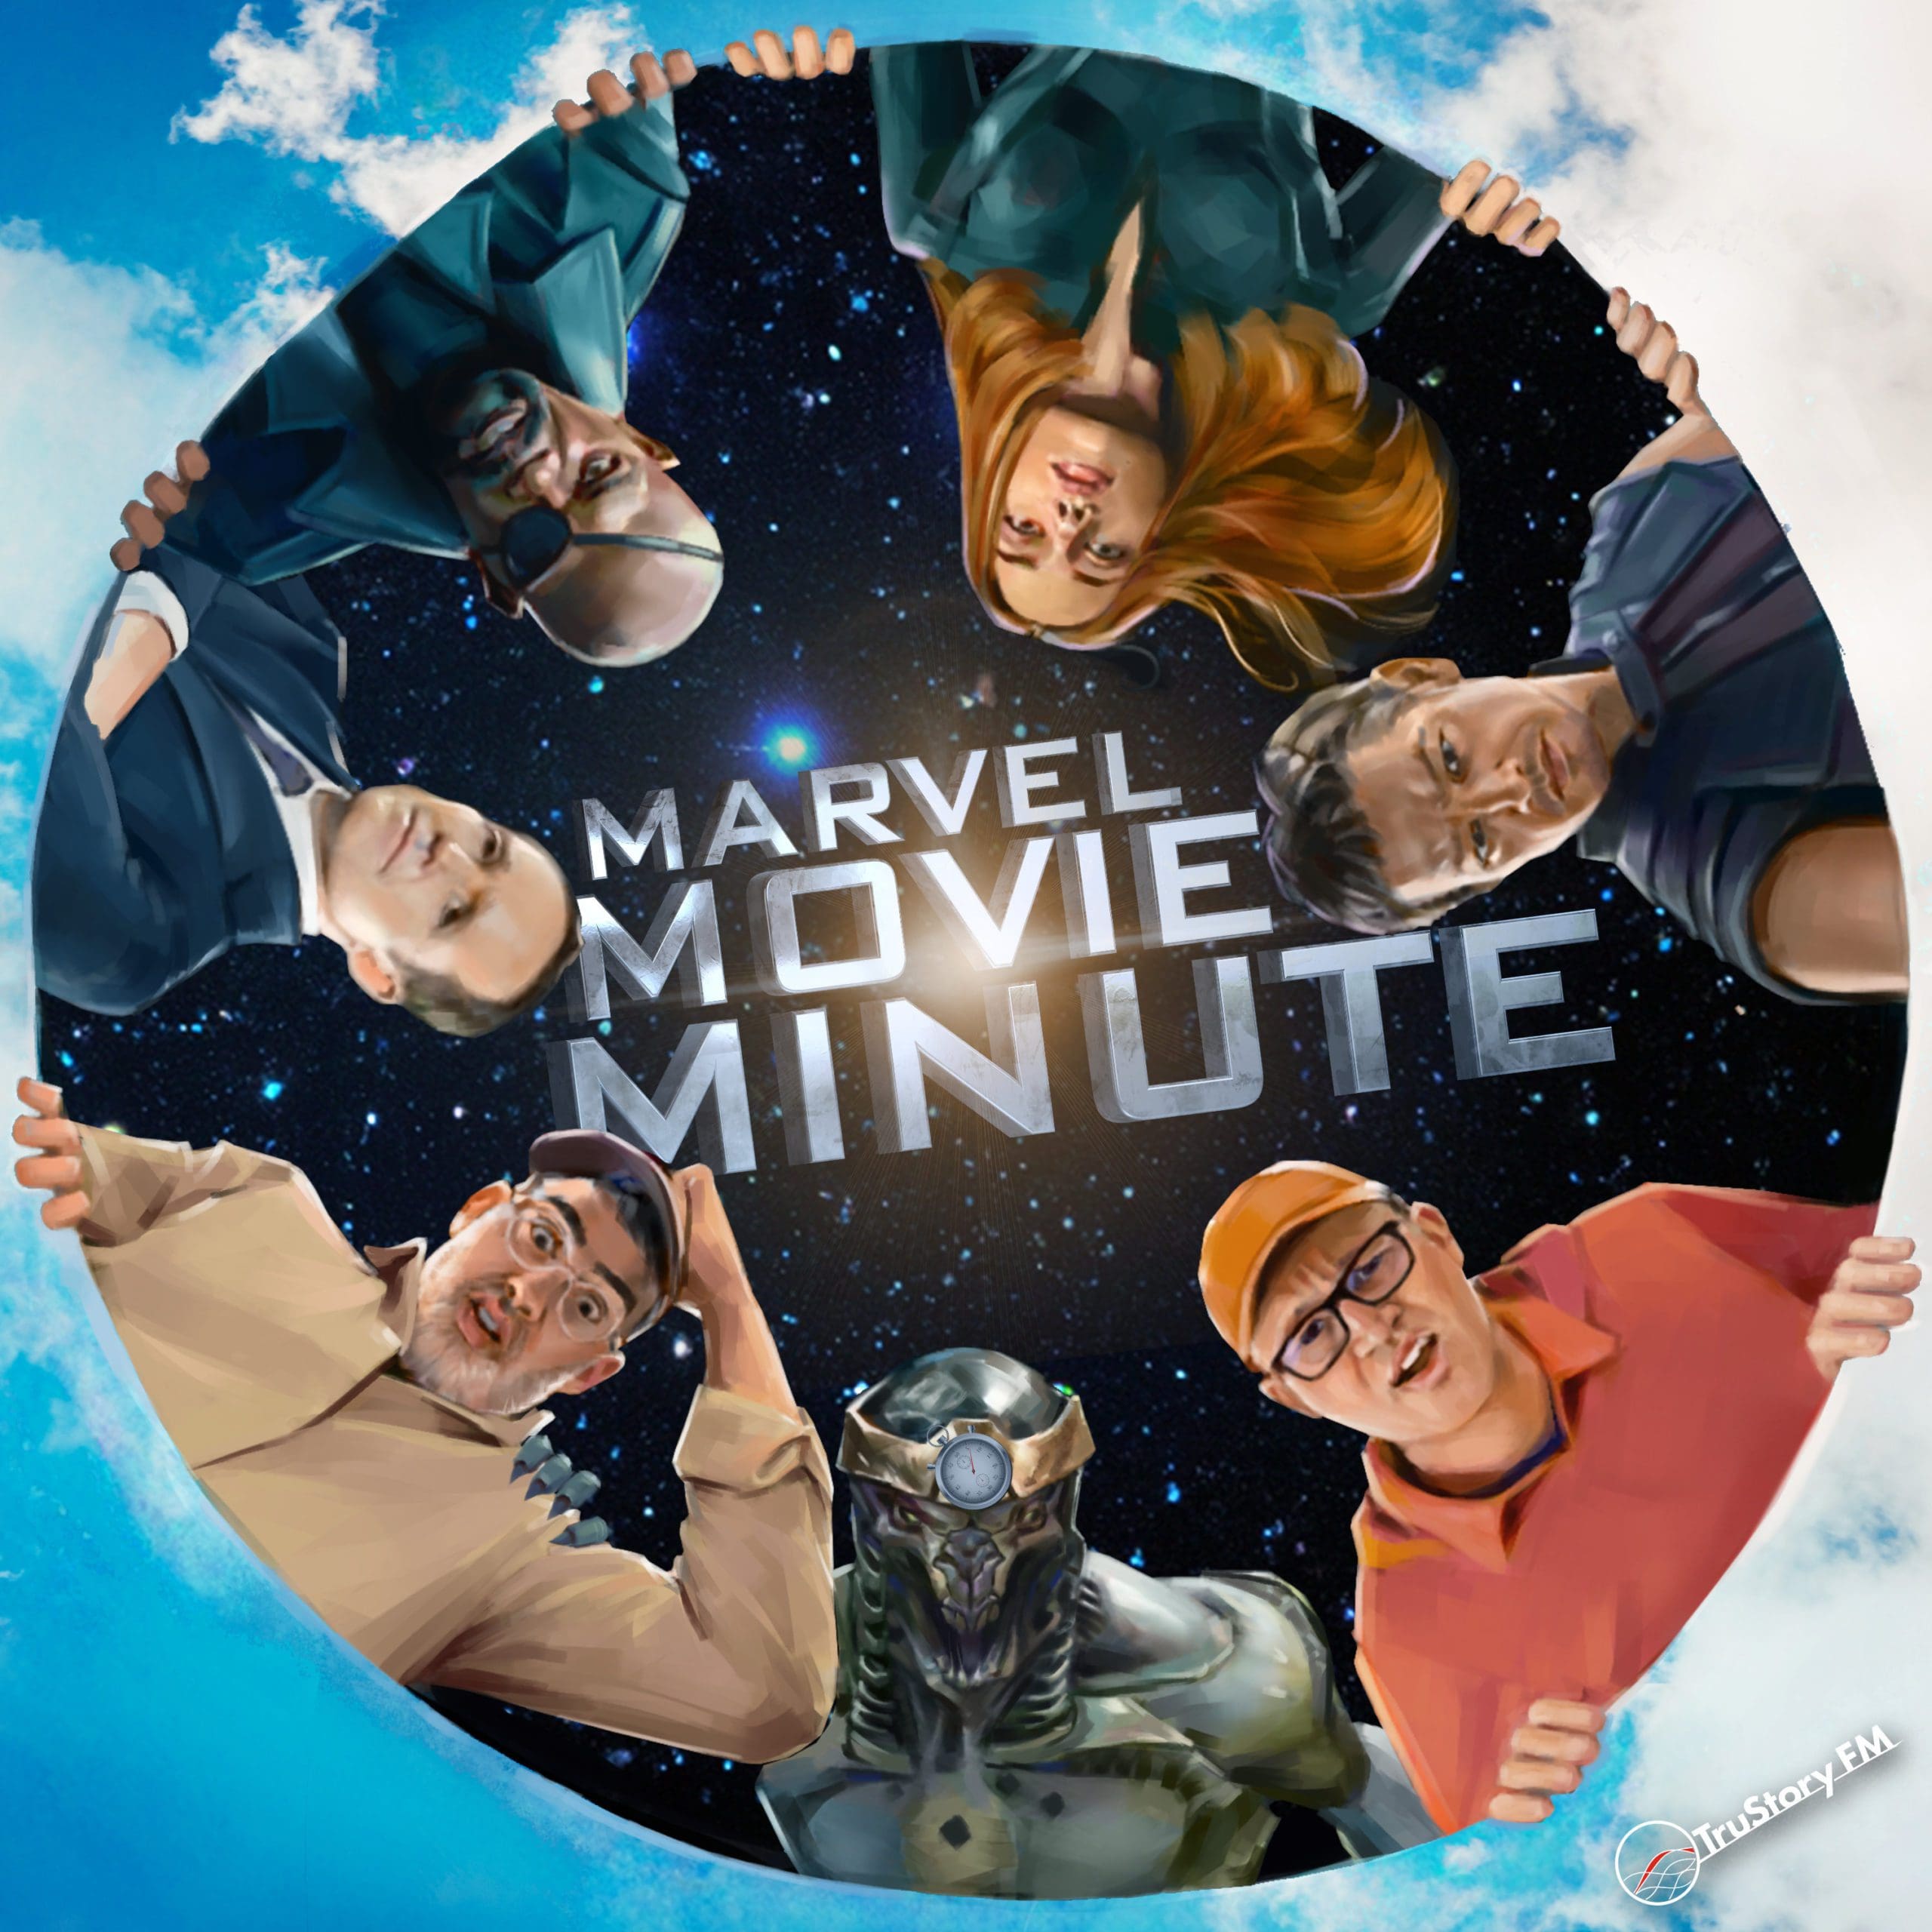 Marvel Movie Minute season 6